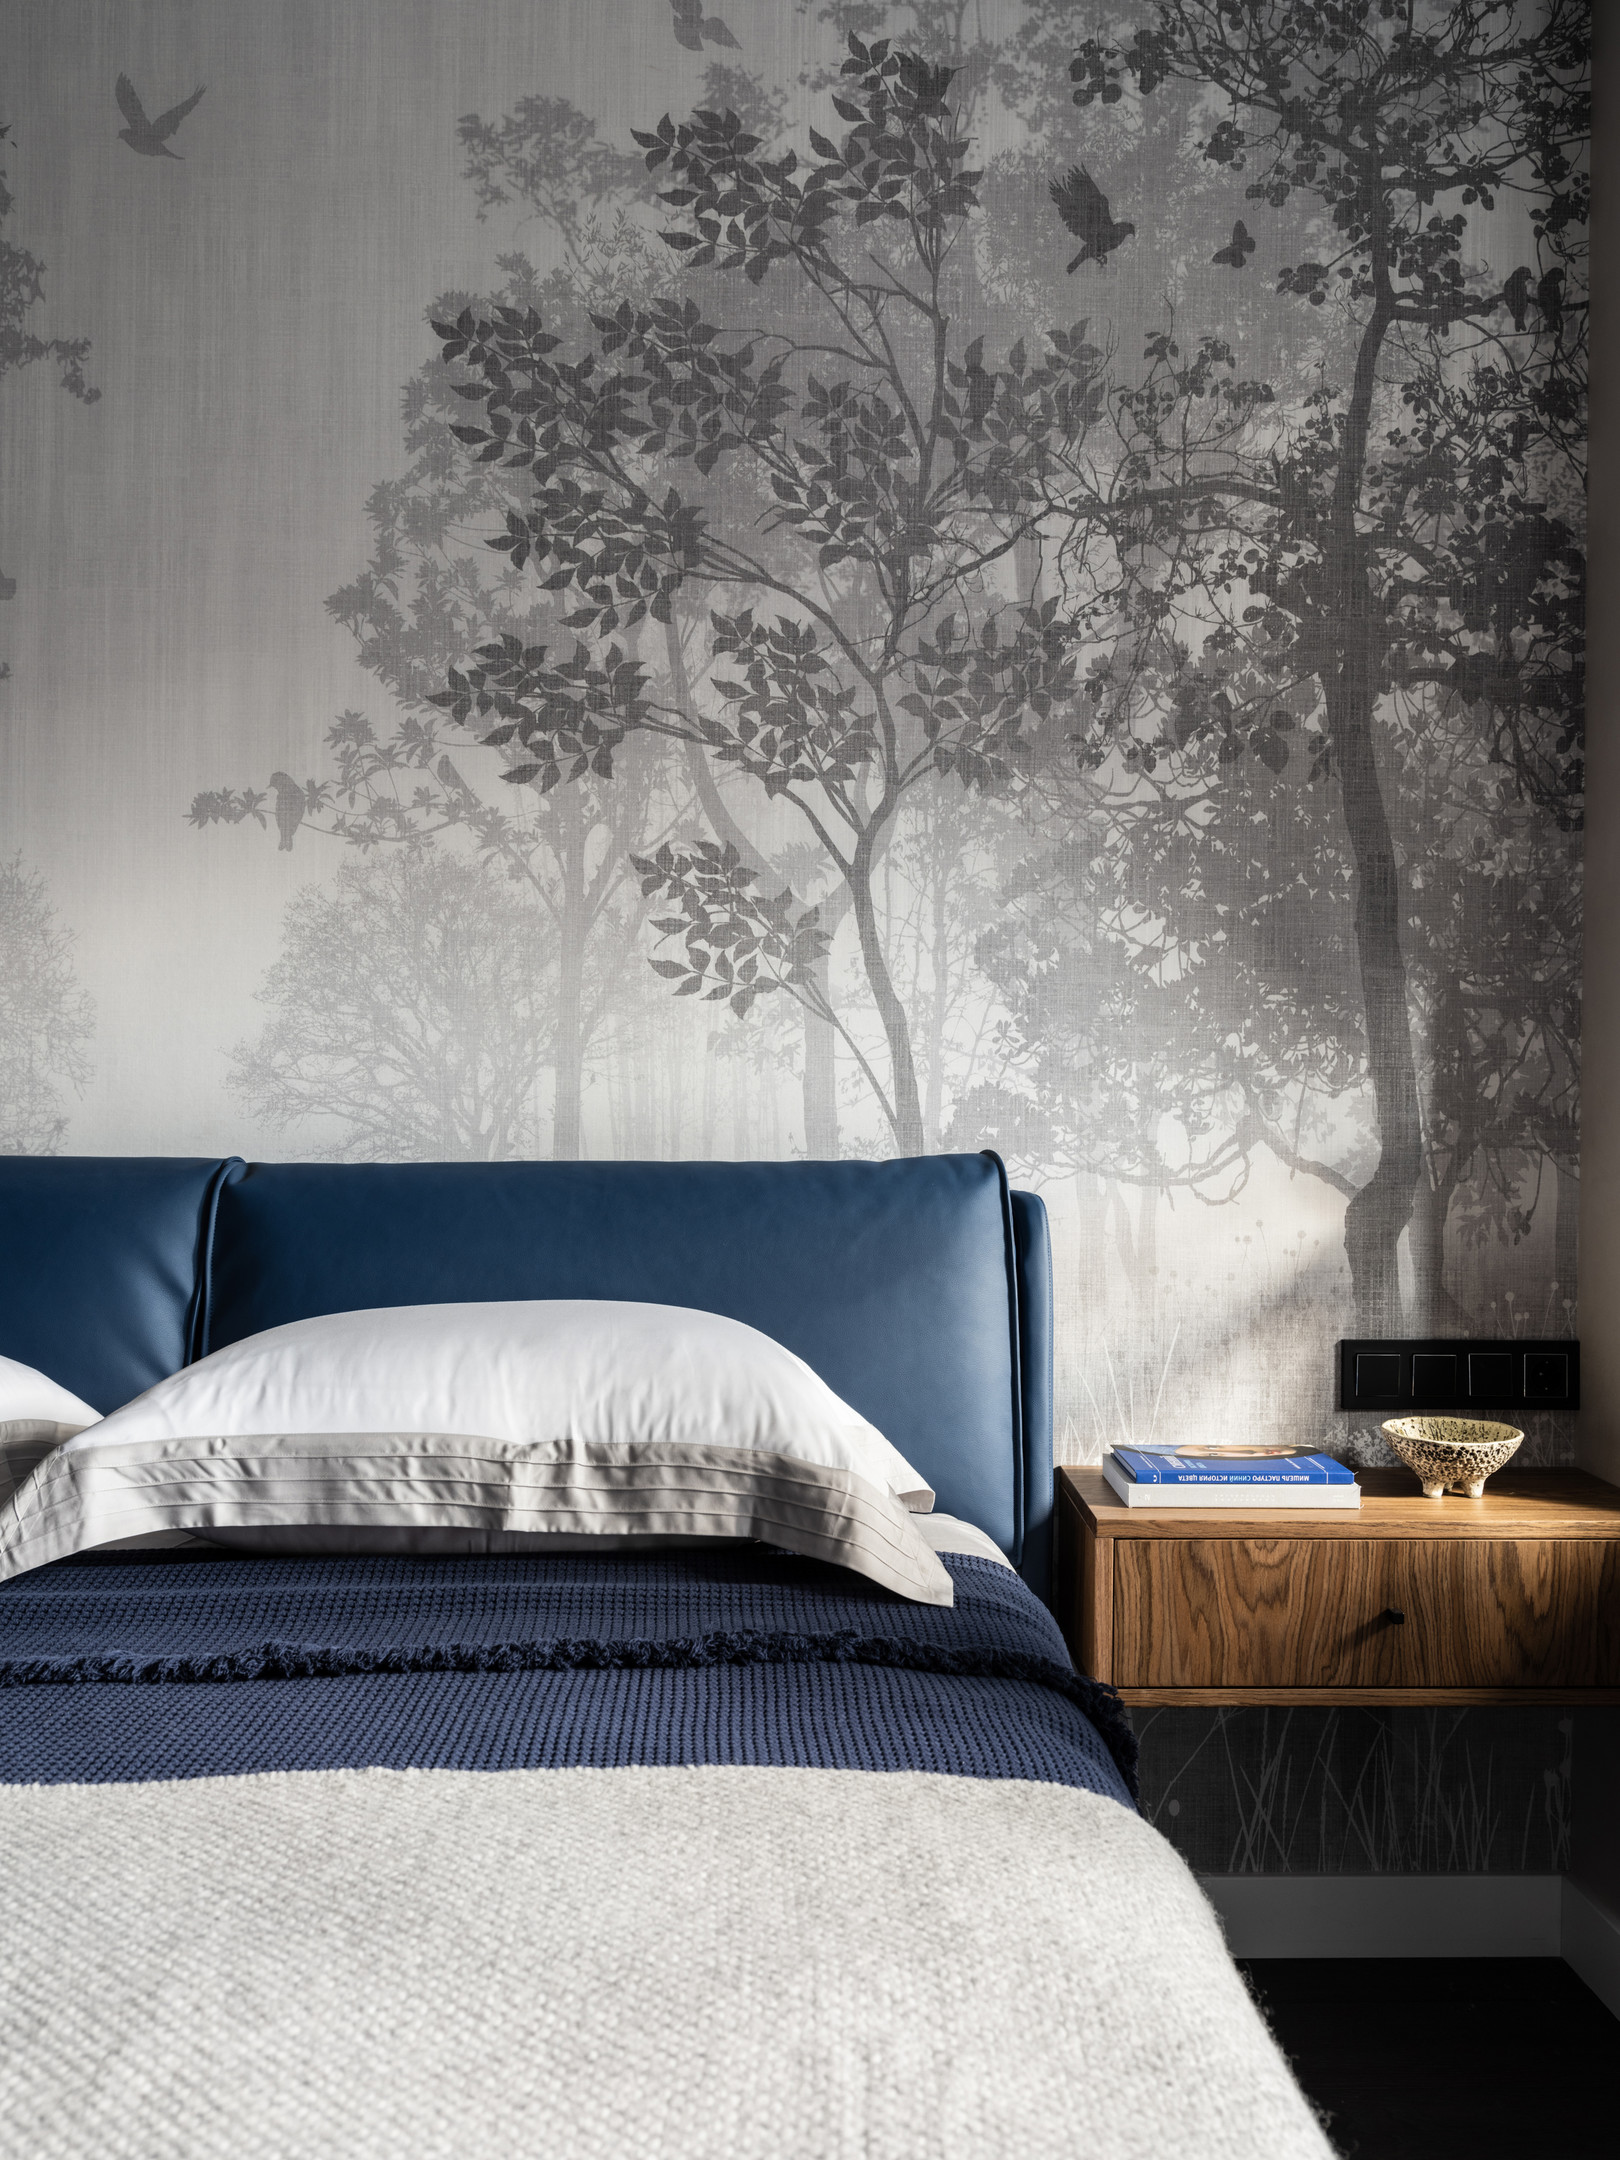 Thay vì sử dụng giấy dán tường, NTK đã chọn vải in chất lượng cao nhằm tăng sự sinh động cho phòng ngủ, giống như chủ nhân đang nghỉ ngơi trong một khu rừng yên ả, lãng mạn. táp đầu giường bằng gỗ gắn tường cực kỳ nhỏ gọn và thuận tầm tay với.